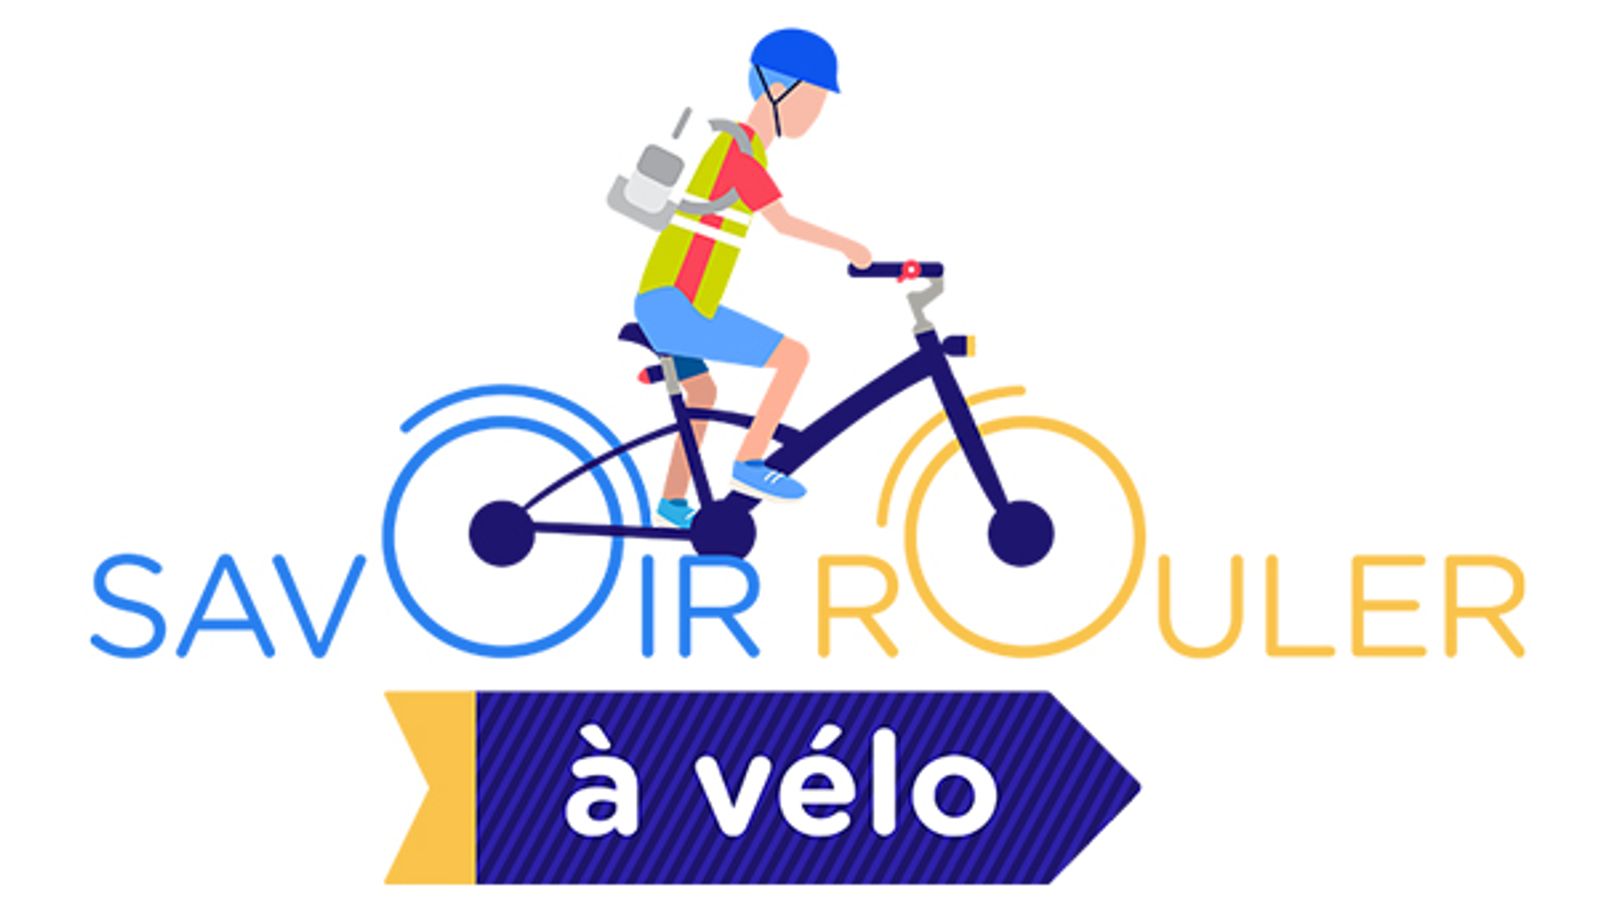 Le programme Savoir Rouler à Vélo pour favoriser l'usage du vélo chez les enfants